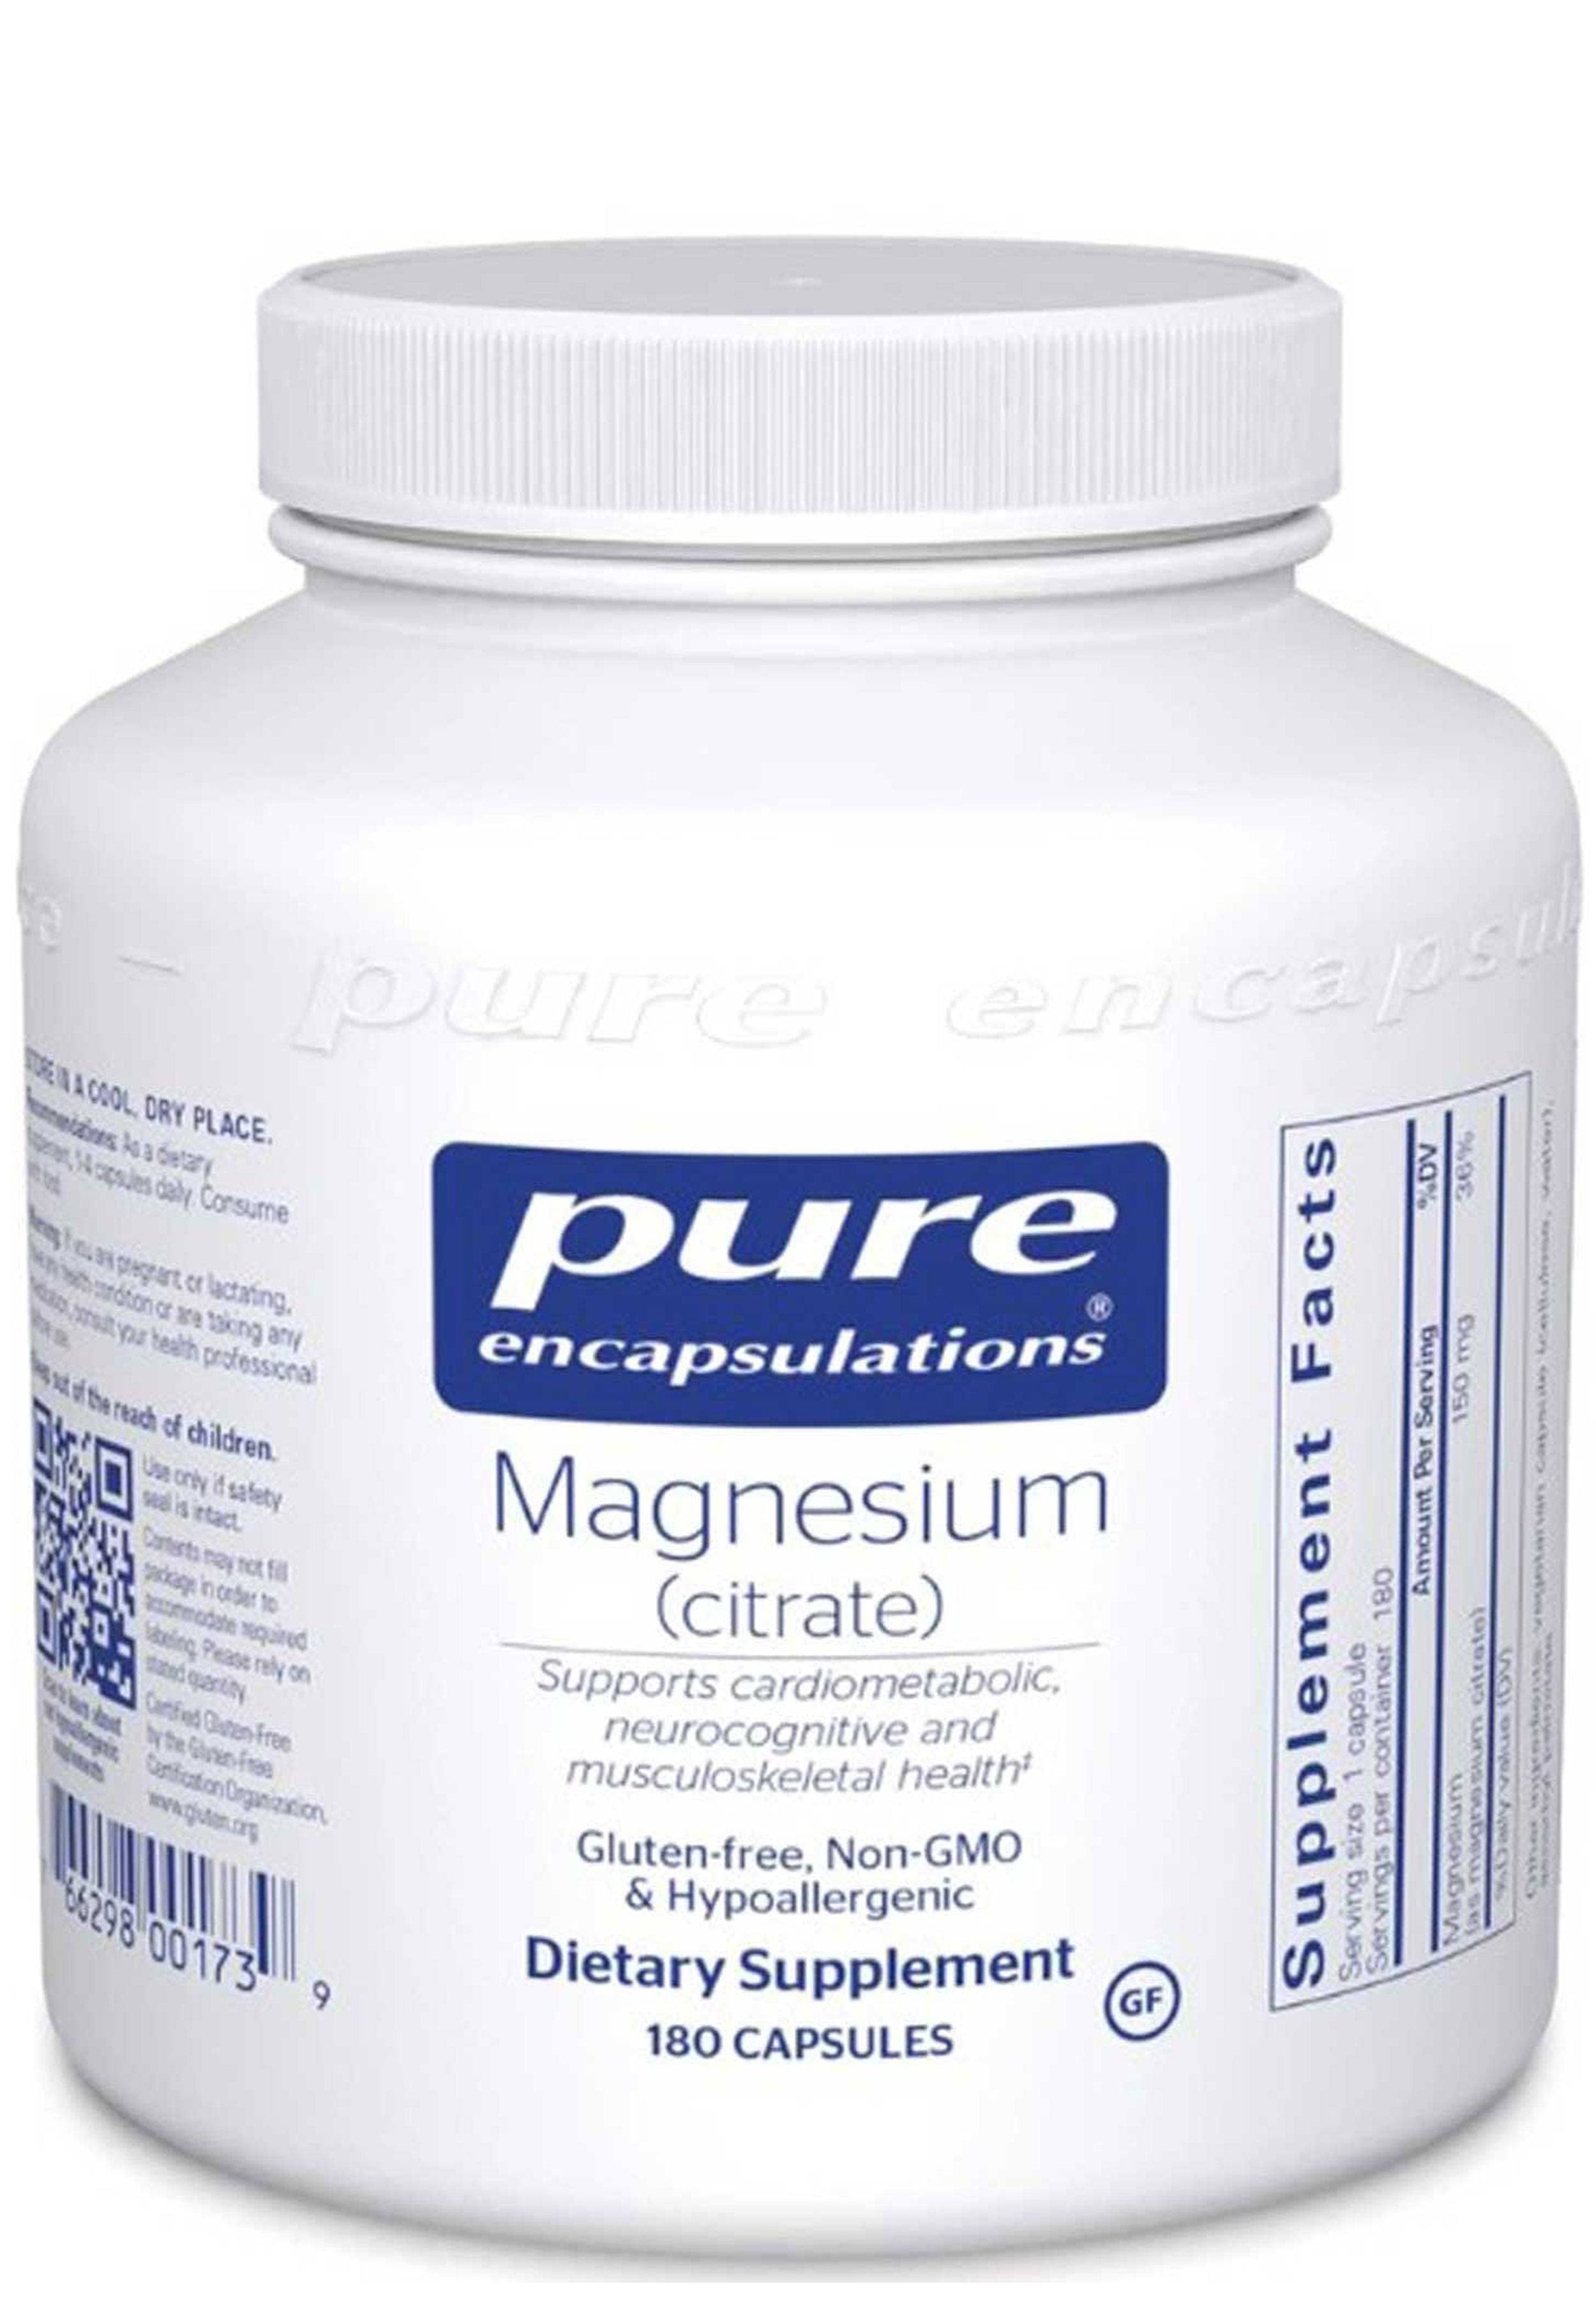 Pure Encapsulations Magnesium Citrate Dietary Supplement - 180 capsules